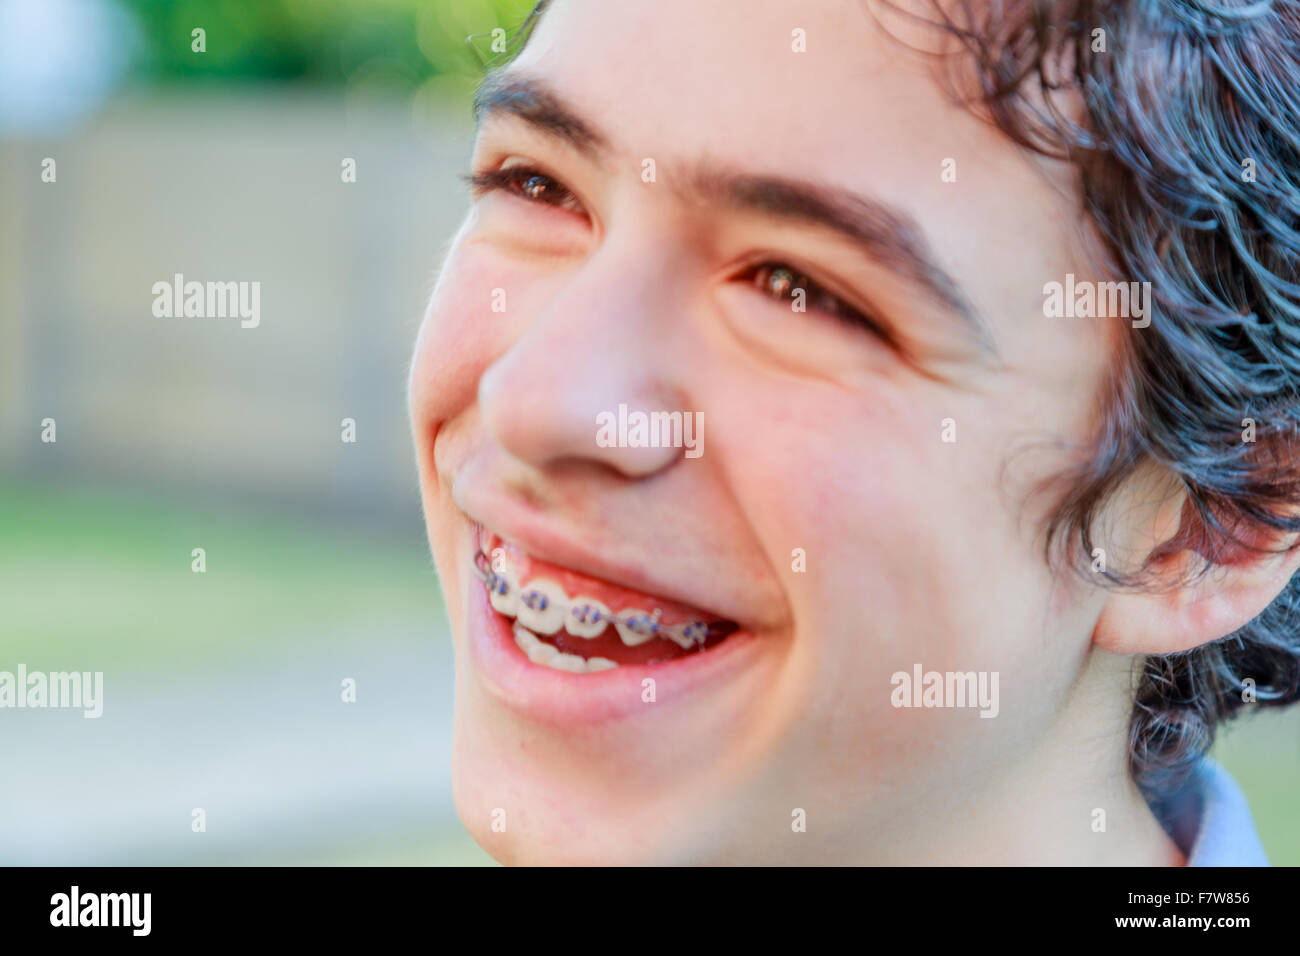 Close-up of Caucasian boy smiling et montrant un appareil orthodontique Banque D'Images